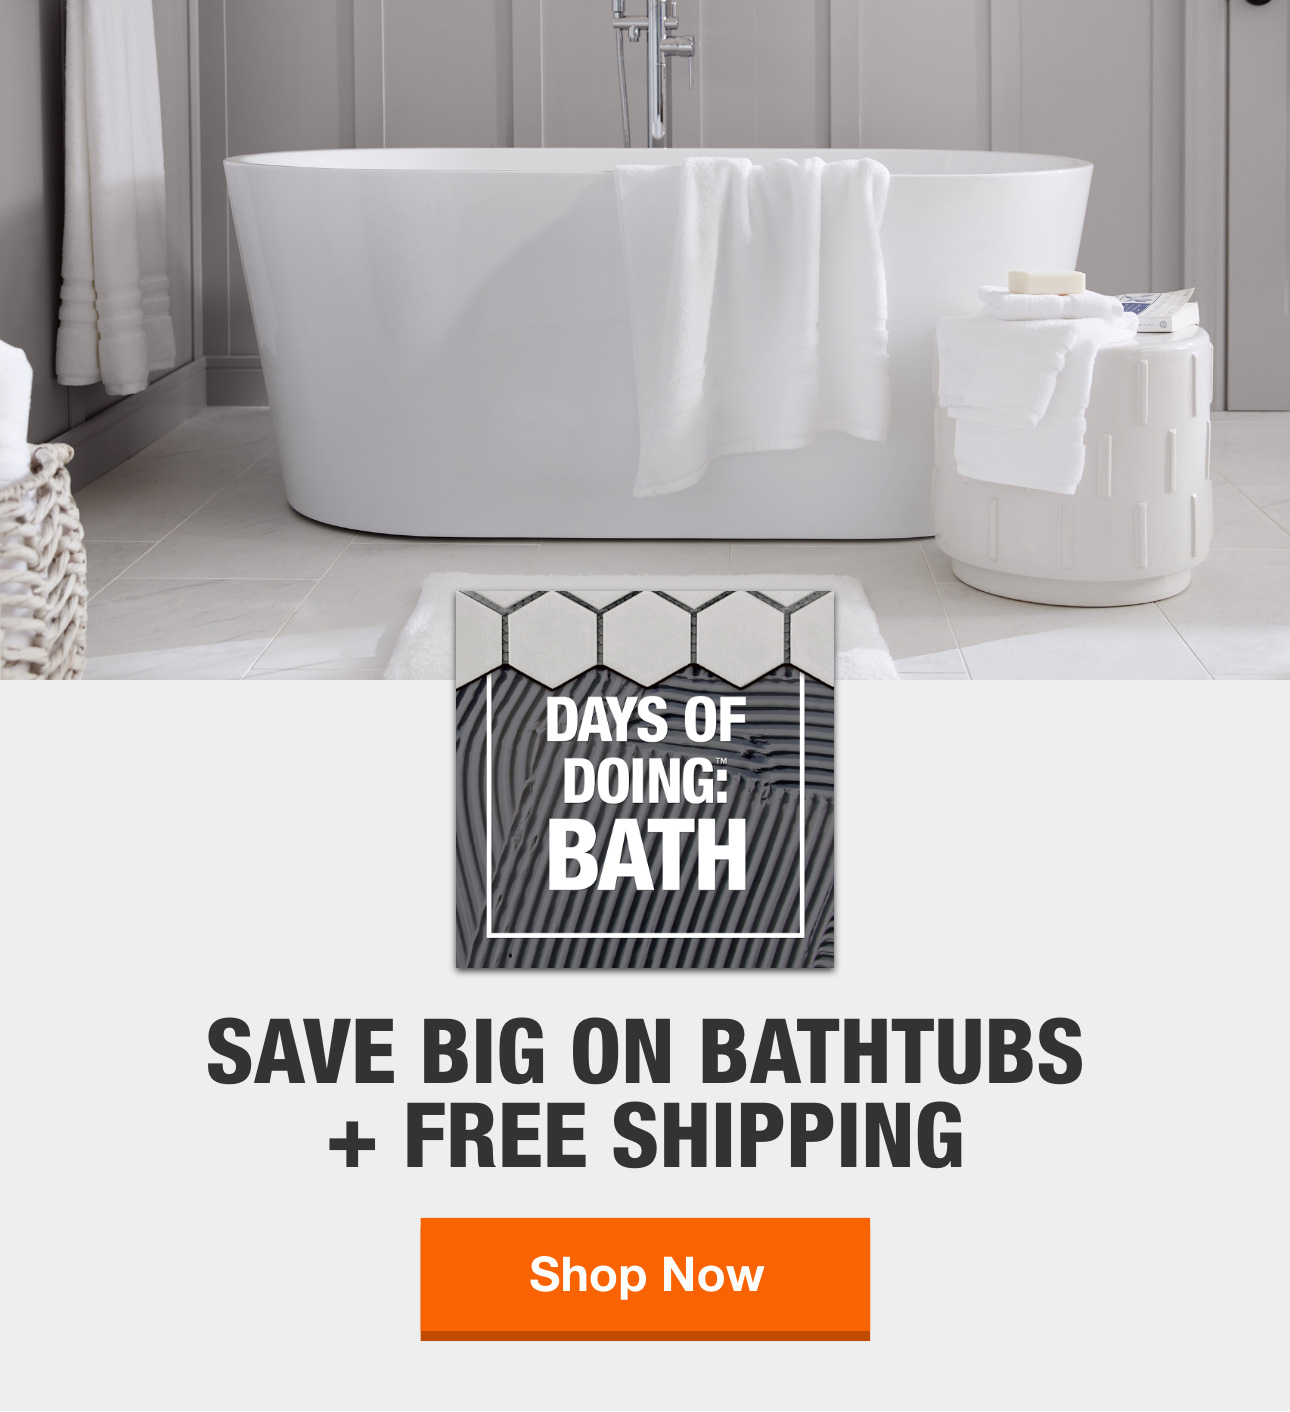 Acrylic Bathtub Repair Kit Home Depot semangat